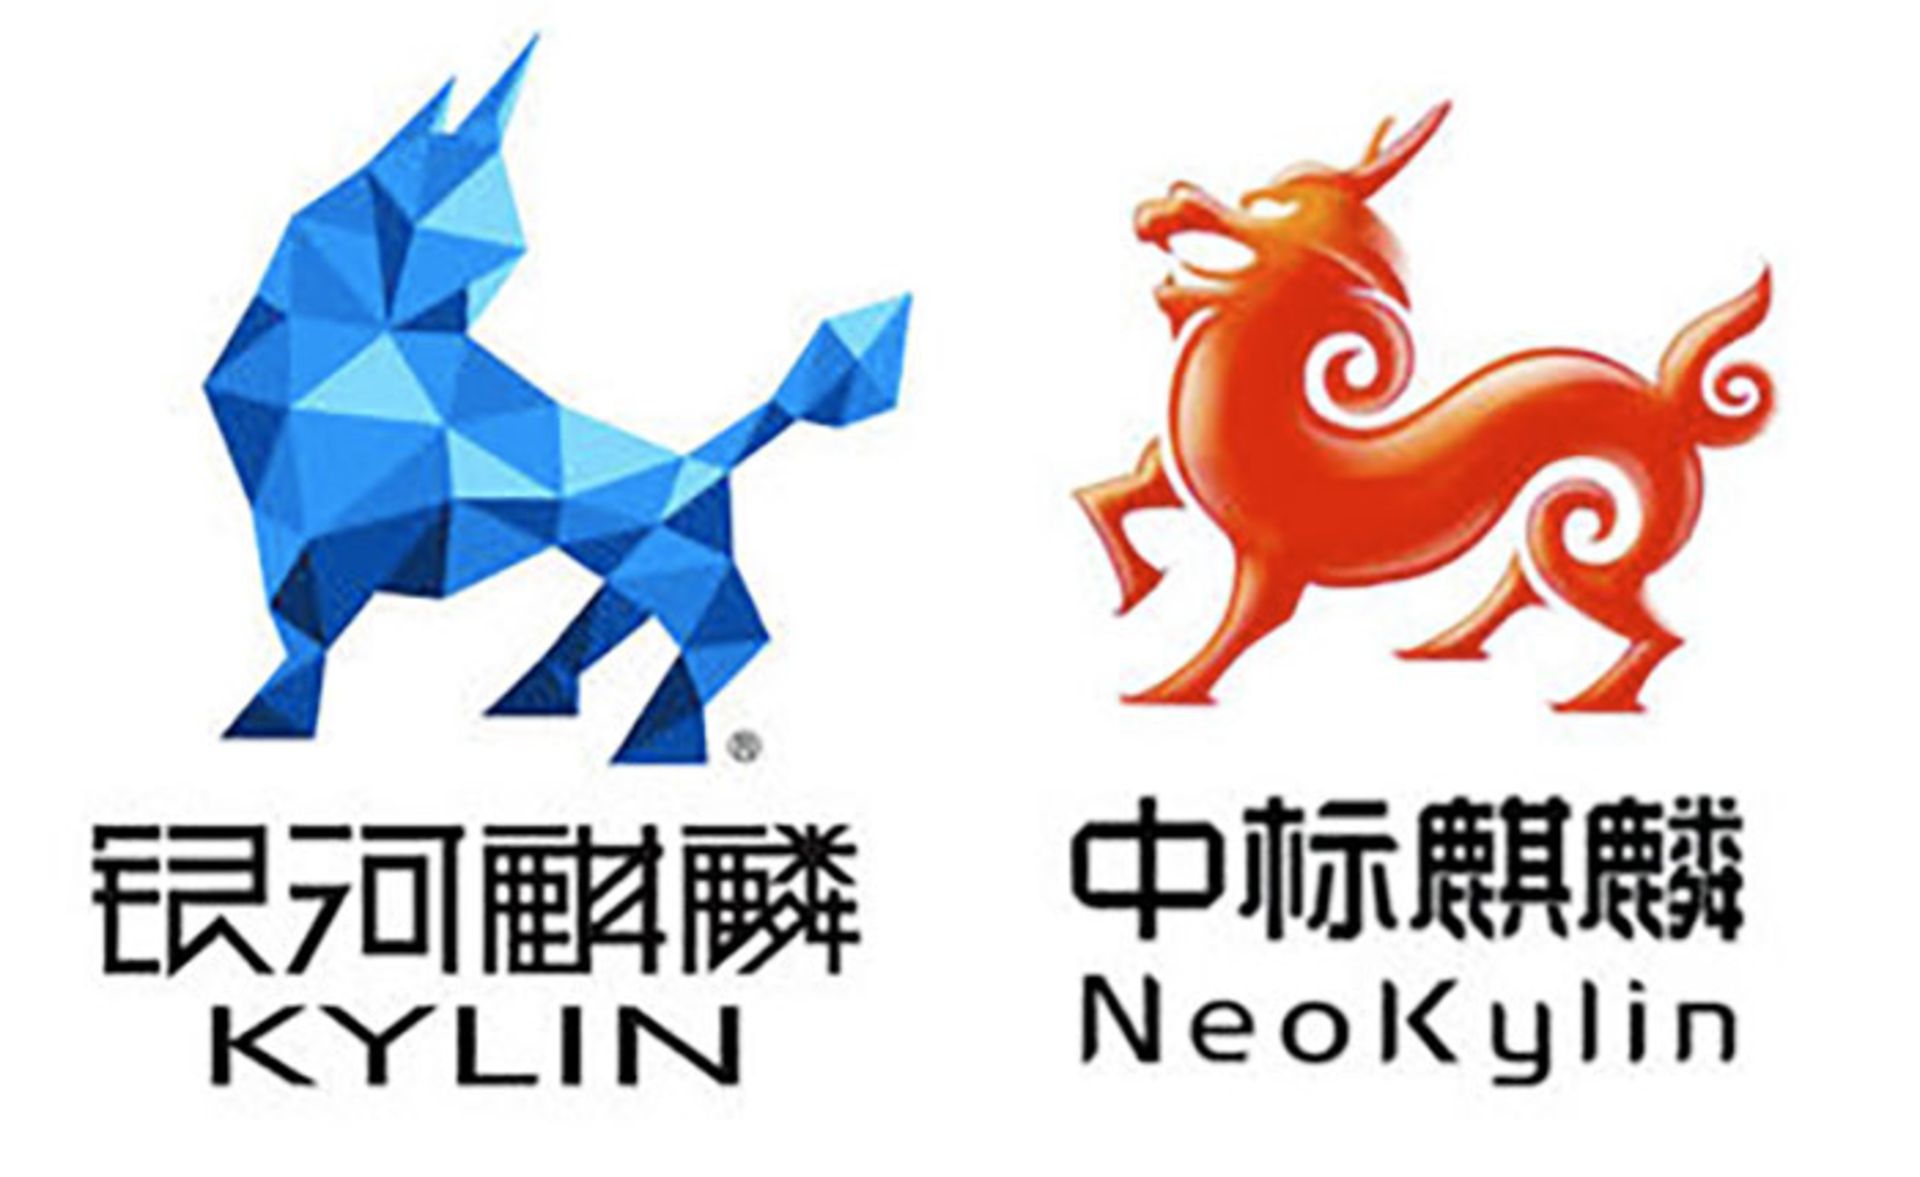  سیستم عامل Kylin و NeoKylin